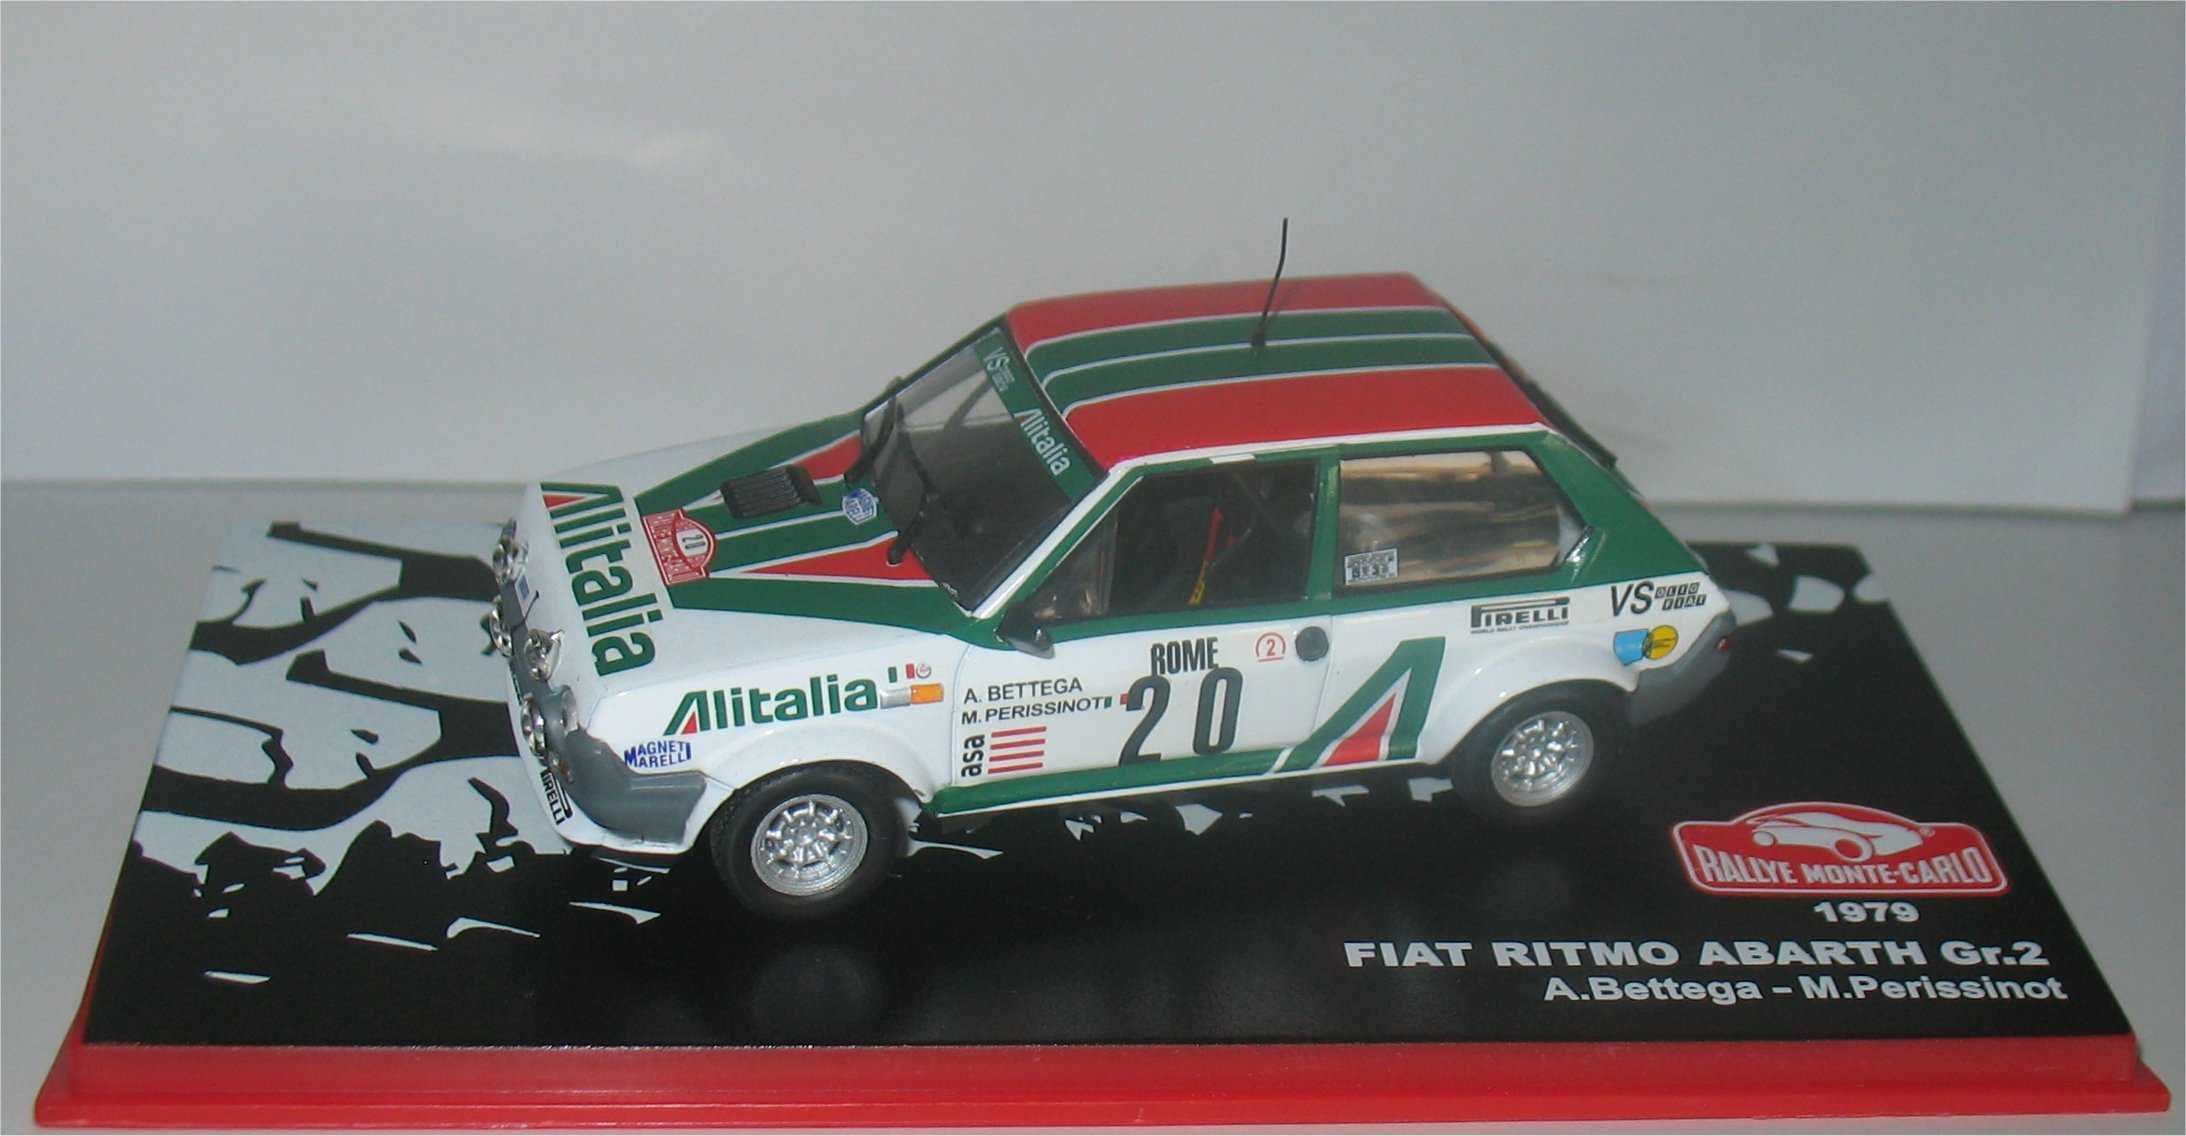 Fiat Ritmo Abarth Gr.2 - Rally de Monte Carlo 1979 - Attilio Bettega